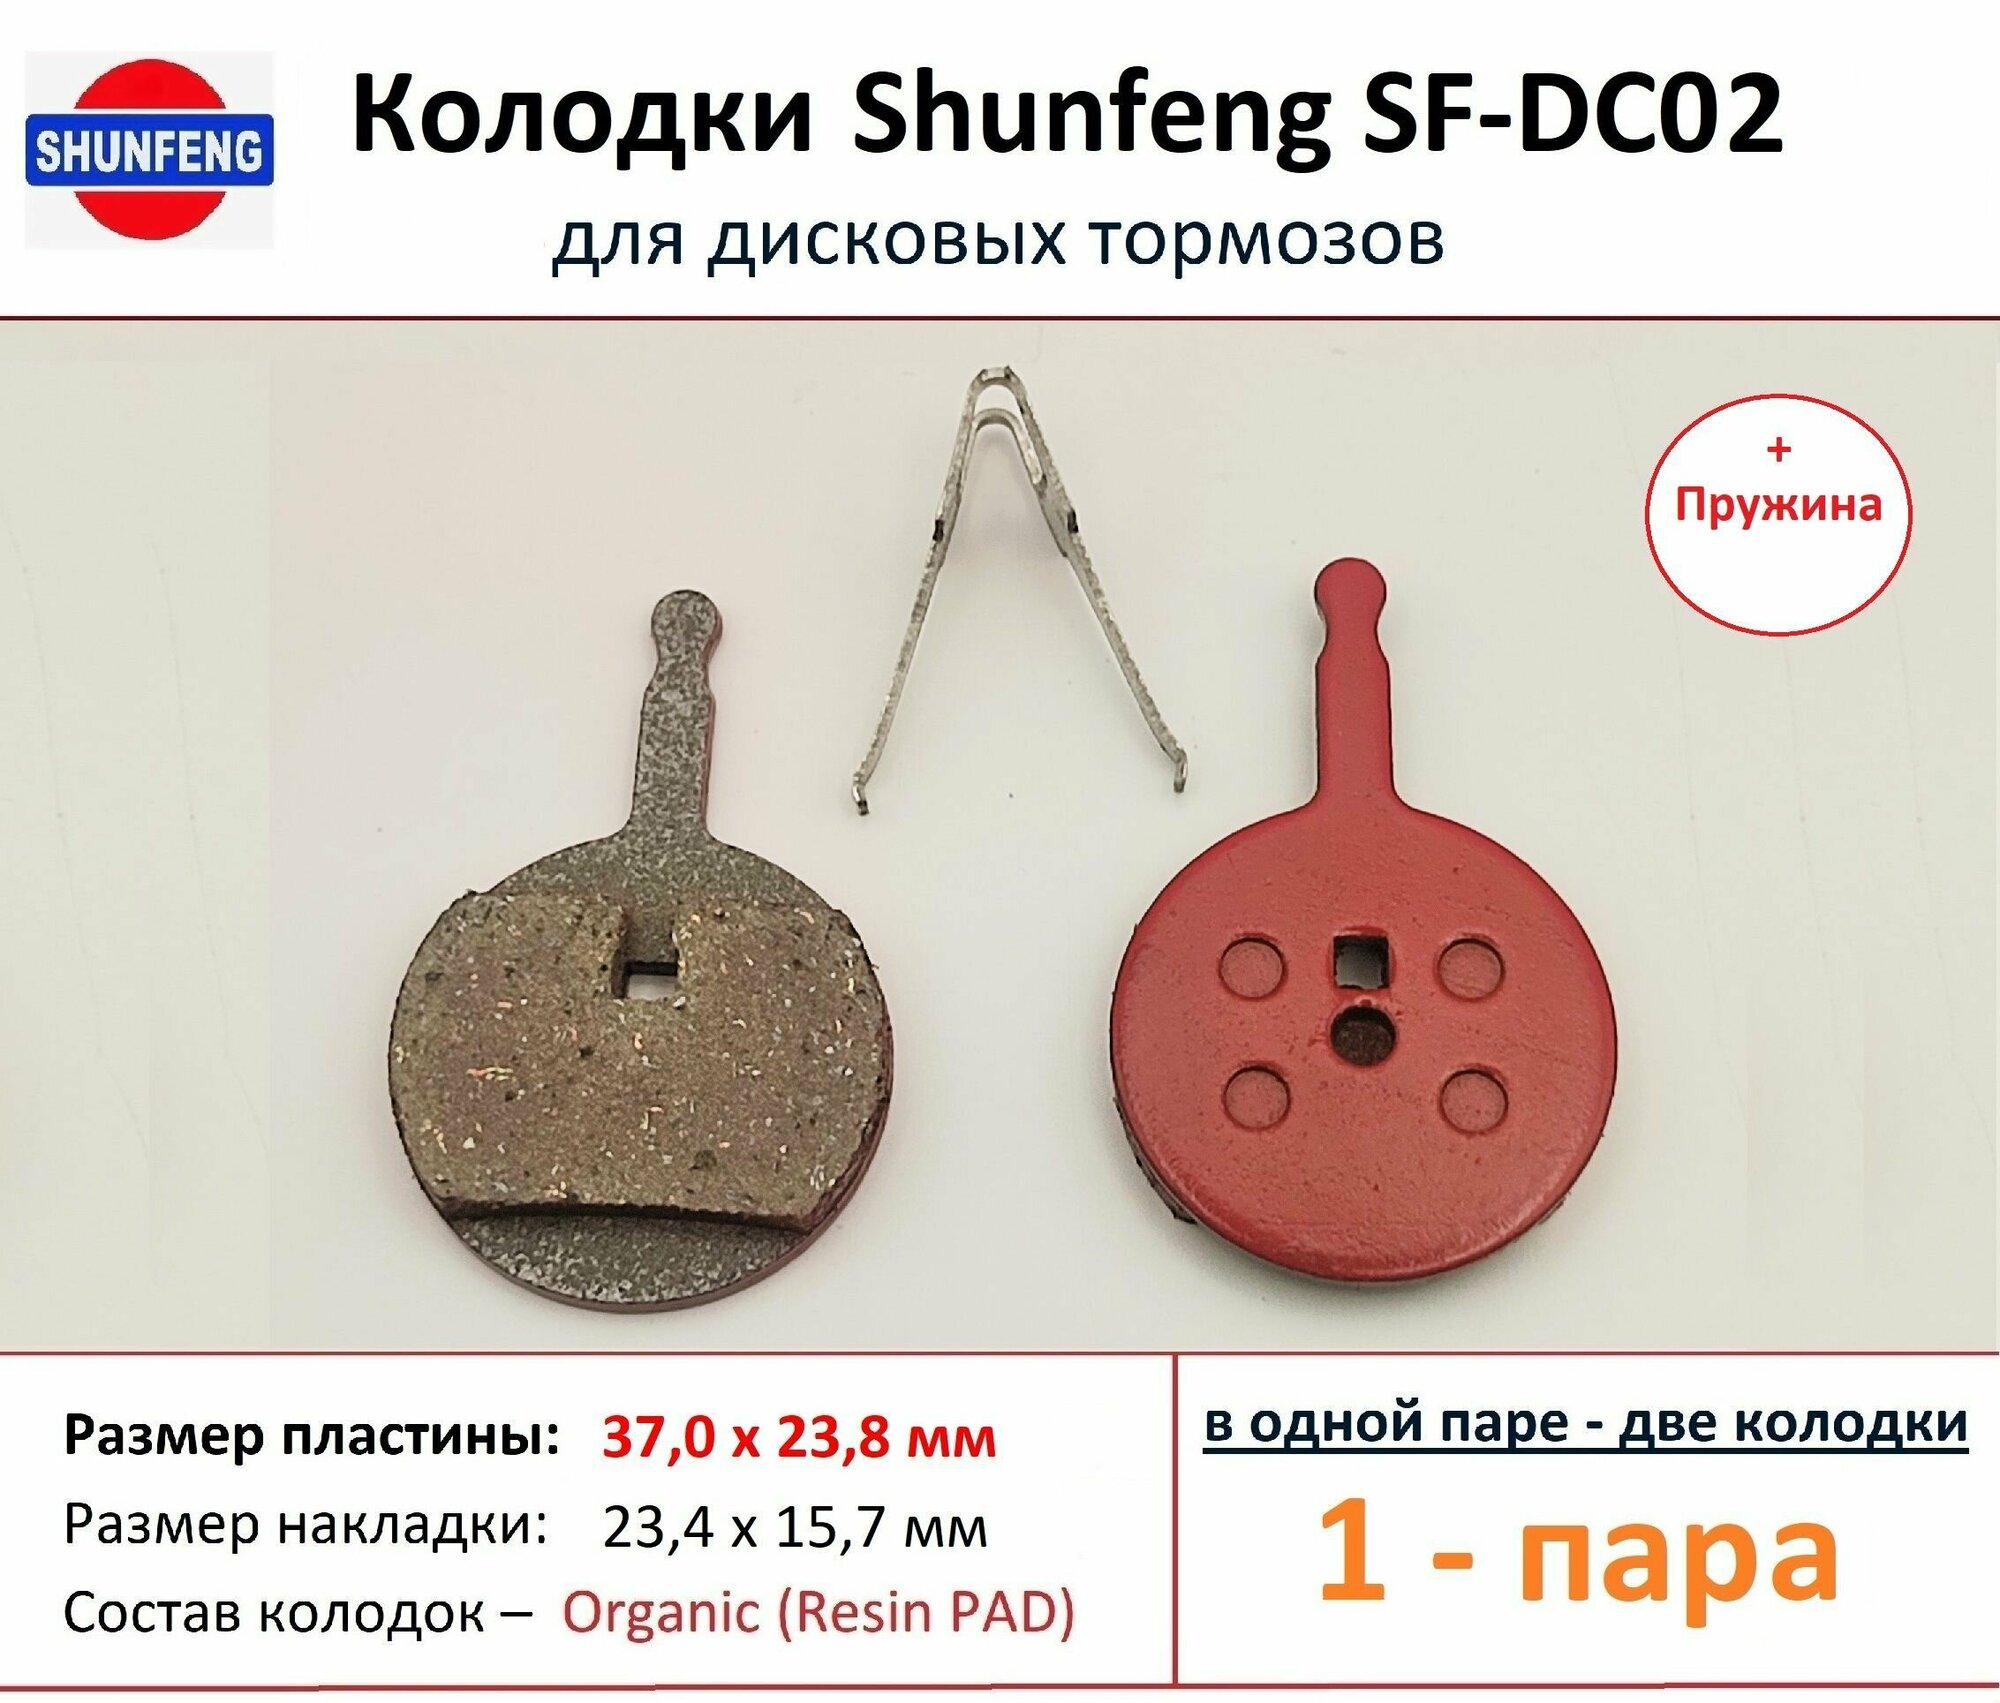 Колодки для дисковых тормозов от фирмы Shunfeng SF-DC02 (1 пара) + Пружина